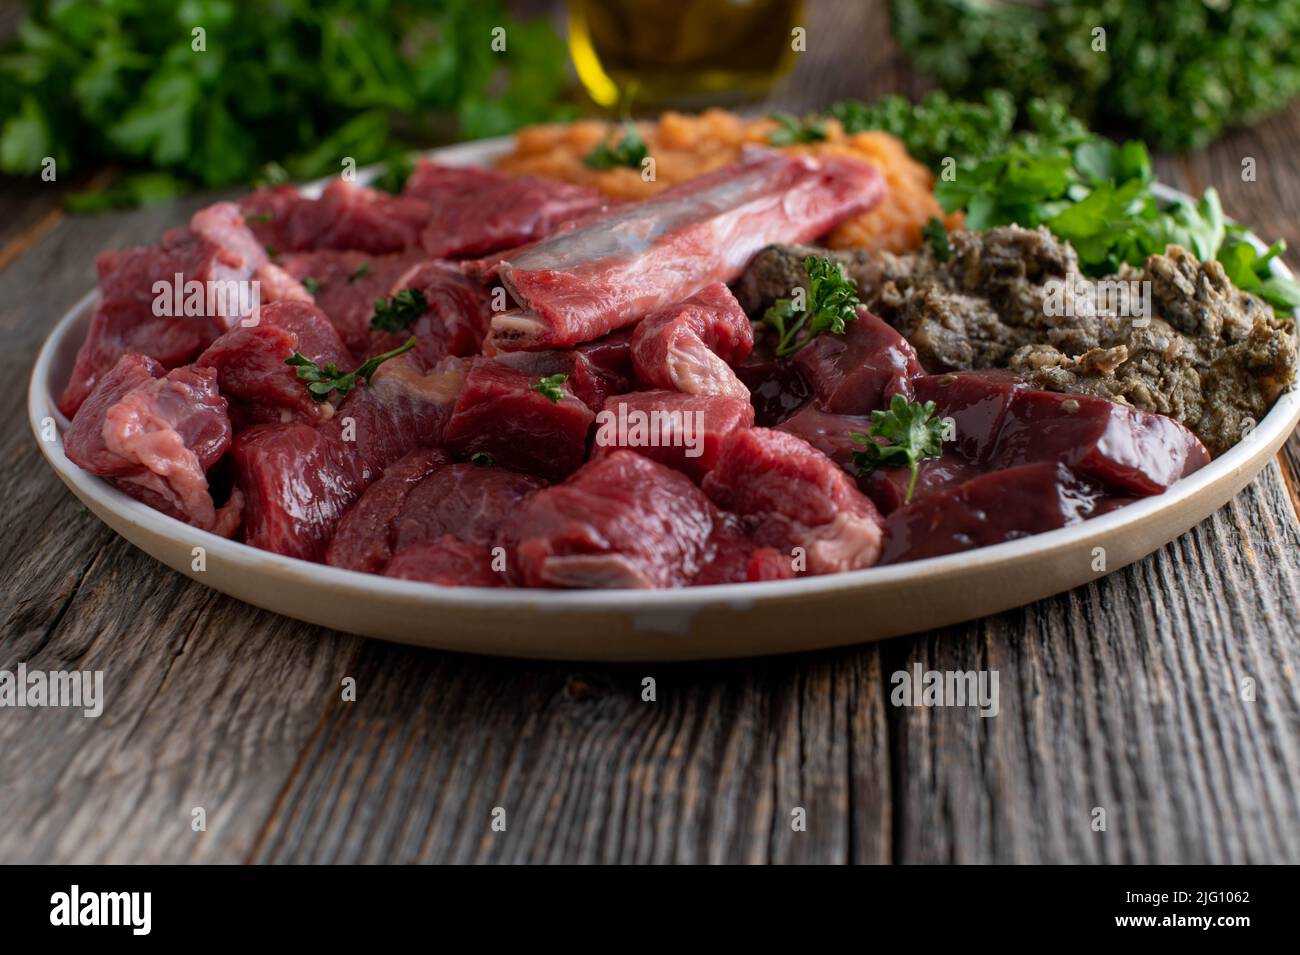 Rohfleischfütterung für Hunde. Ein Teller mit frischem Muskelfleisch, Knochen, Pansen, Innereien, Gemüse und Kräutern Stockfoto